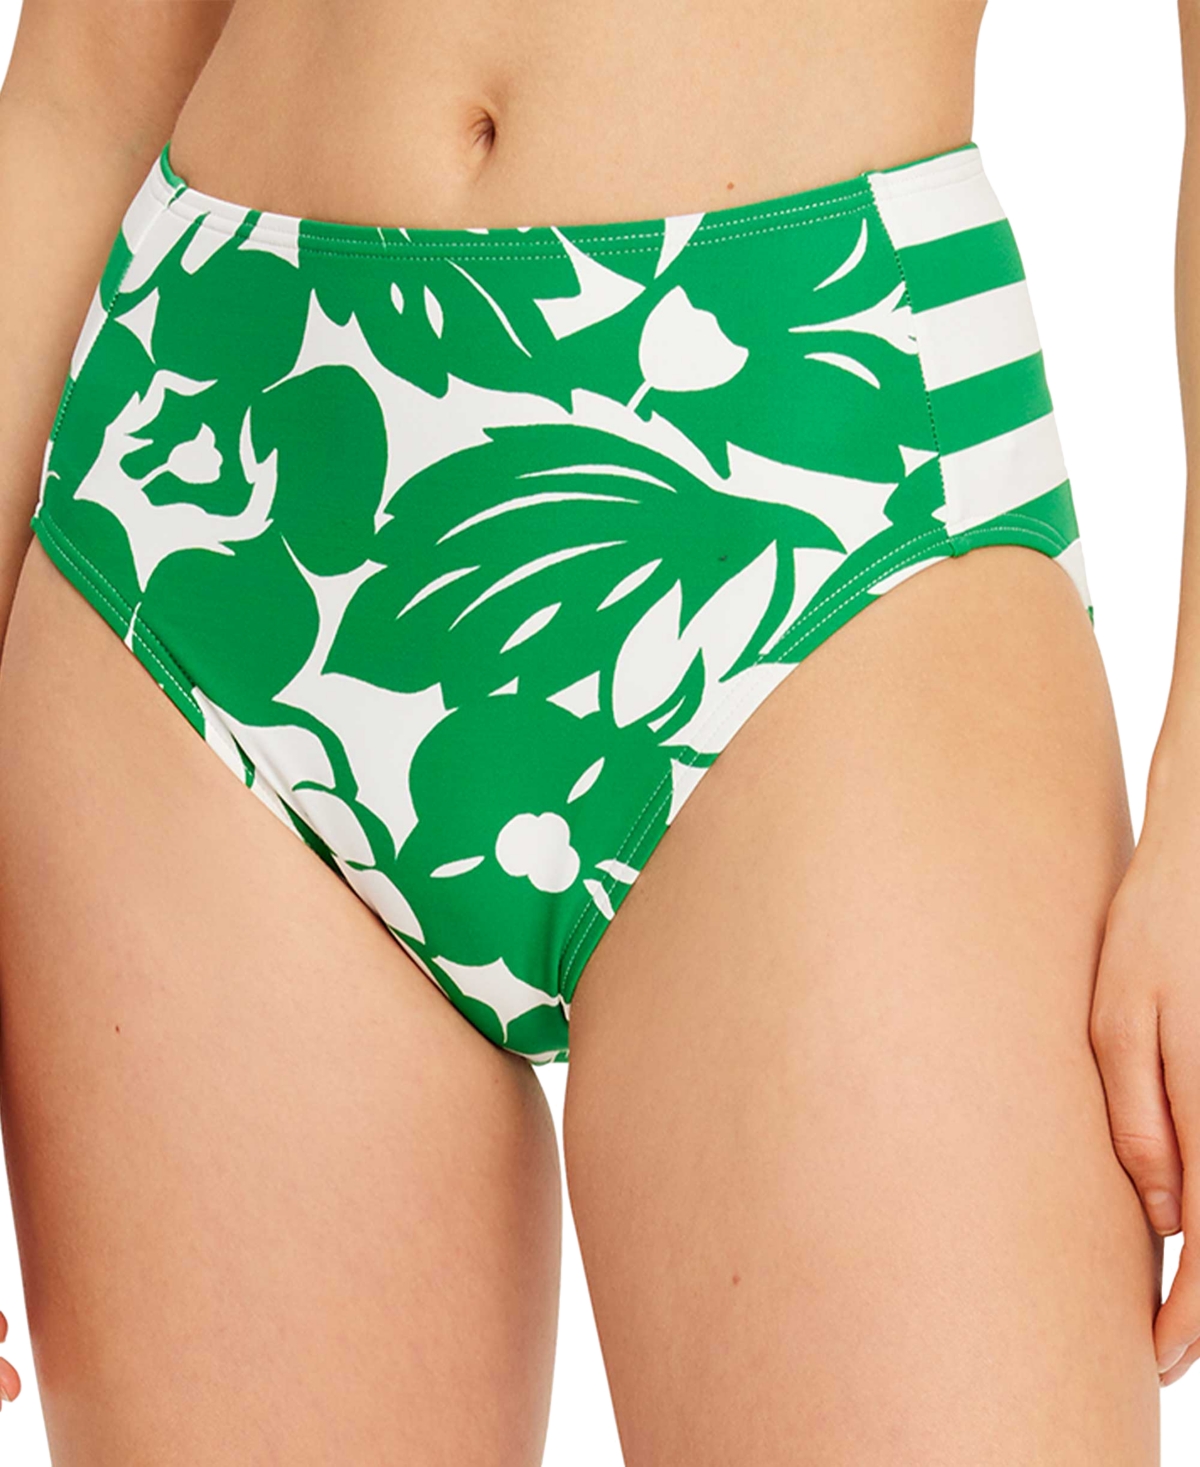 Women's Printed High-Waist Bikini Bottoms - Forest Green